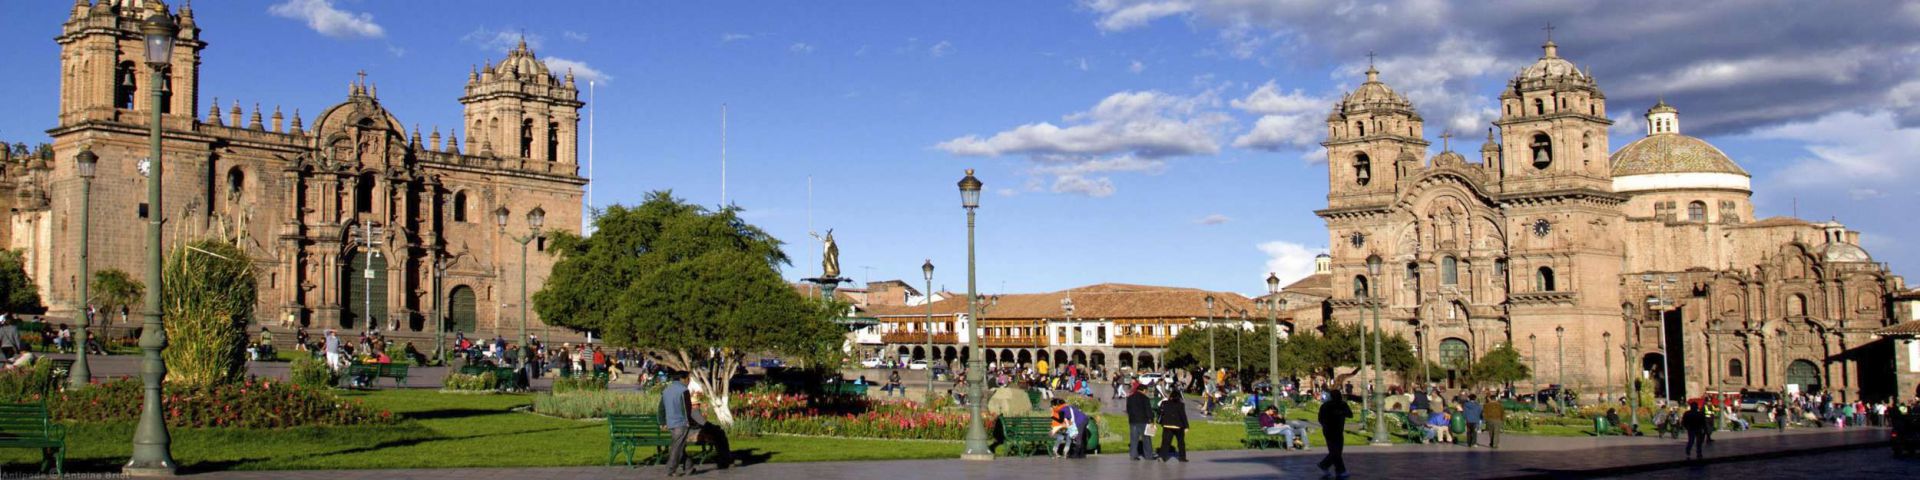 Main Square | Cusco